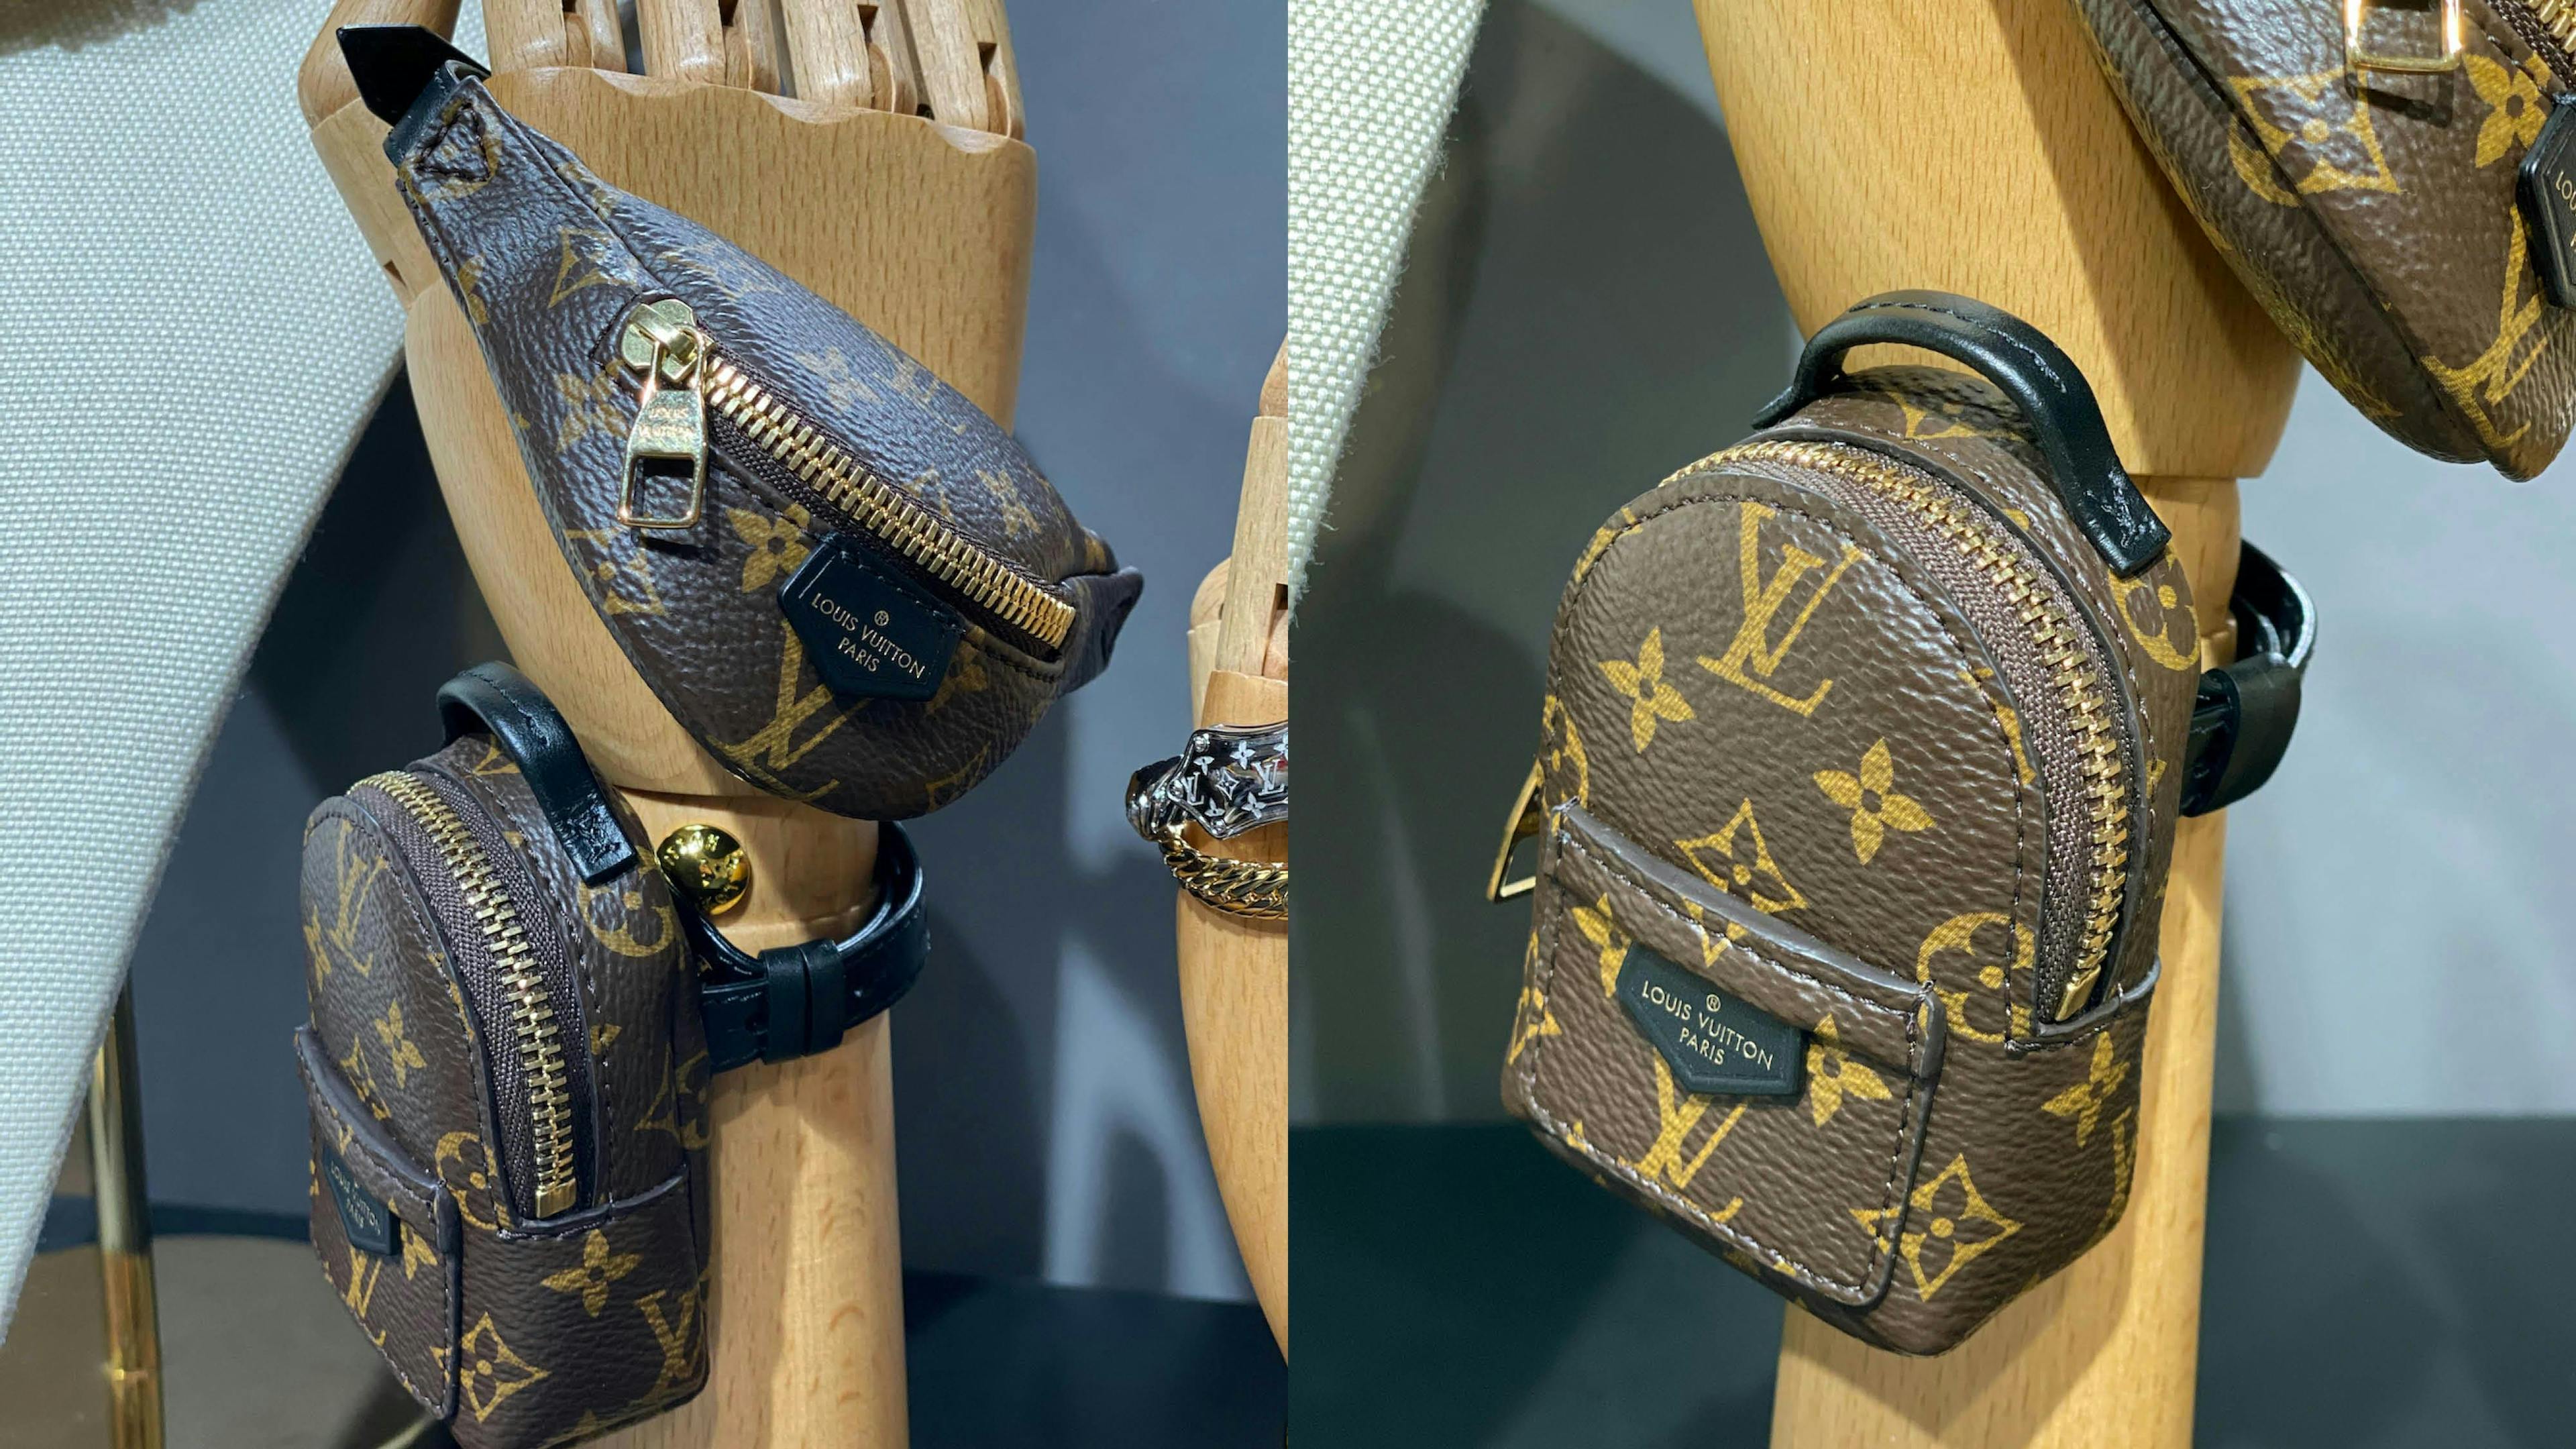 bag handbag accessories accessory